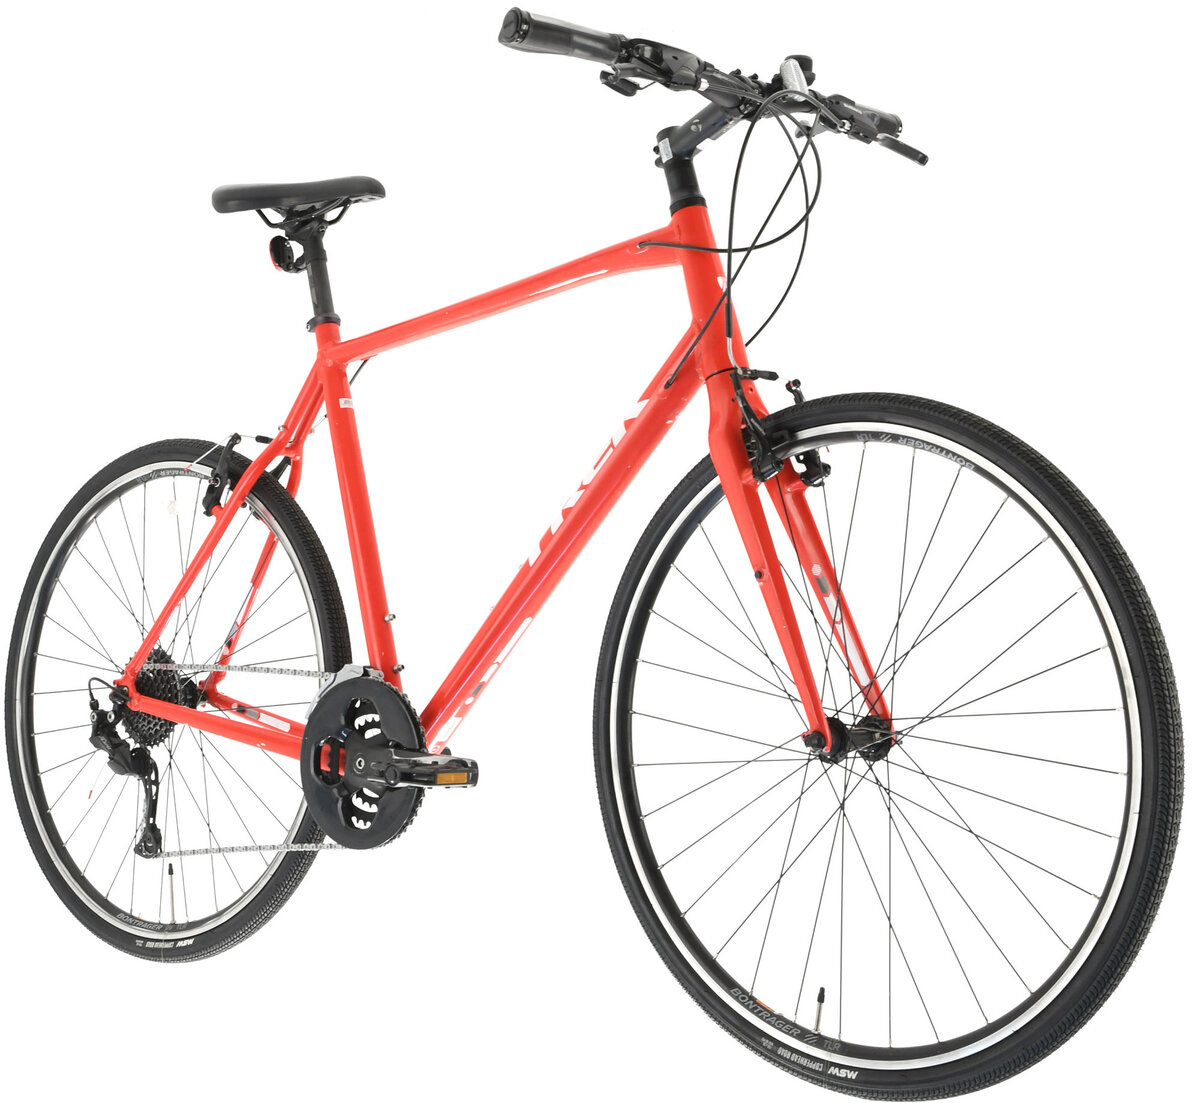 オンラインショップ】 【余市】Trek 7.3 FX サイズ22.5 (XL) 自転車 